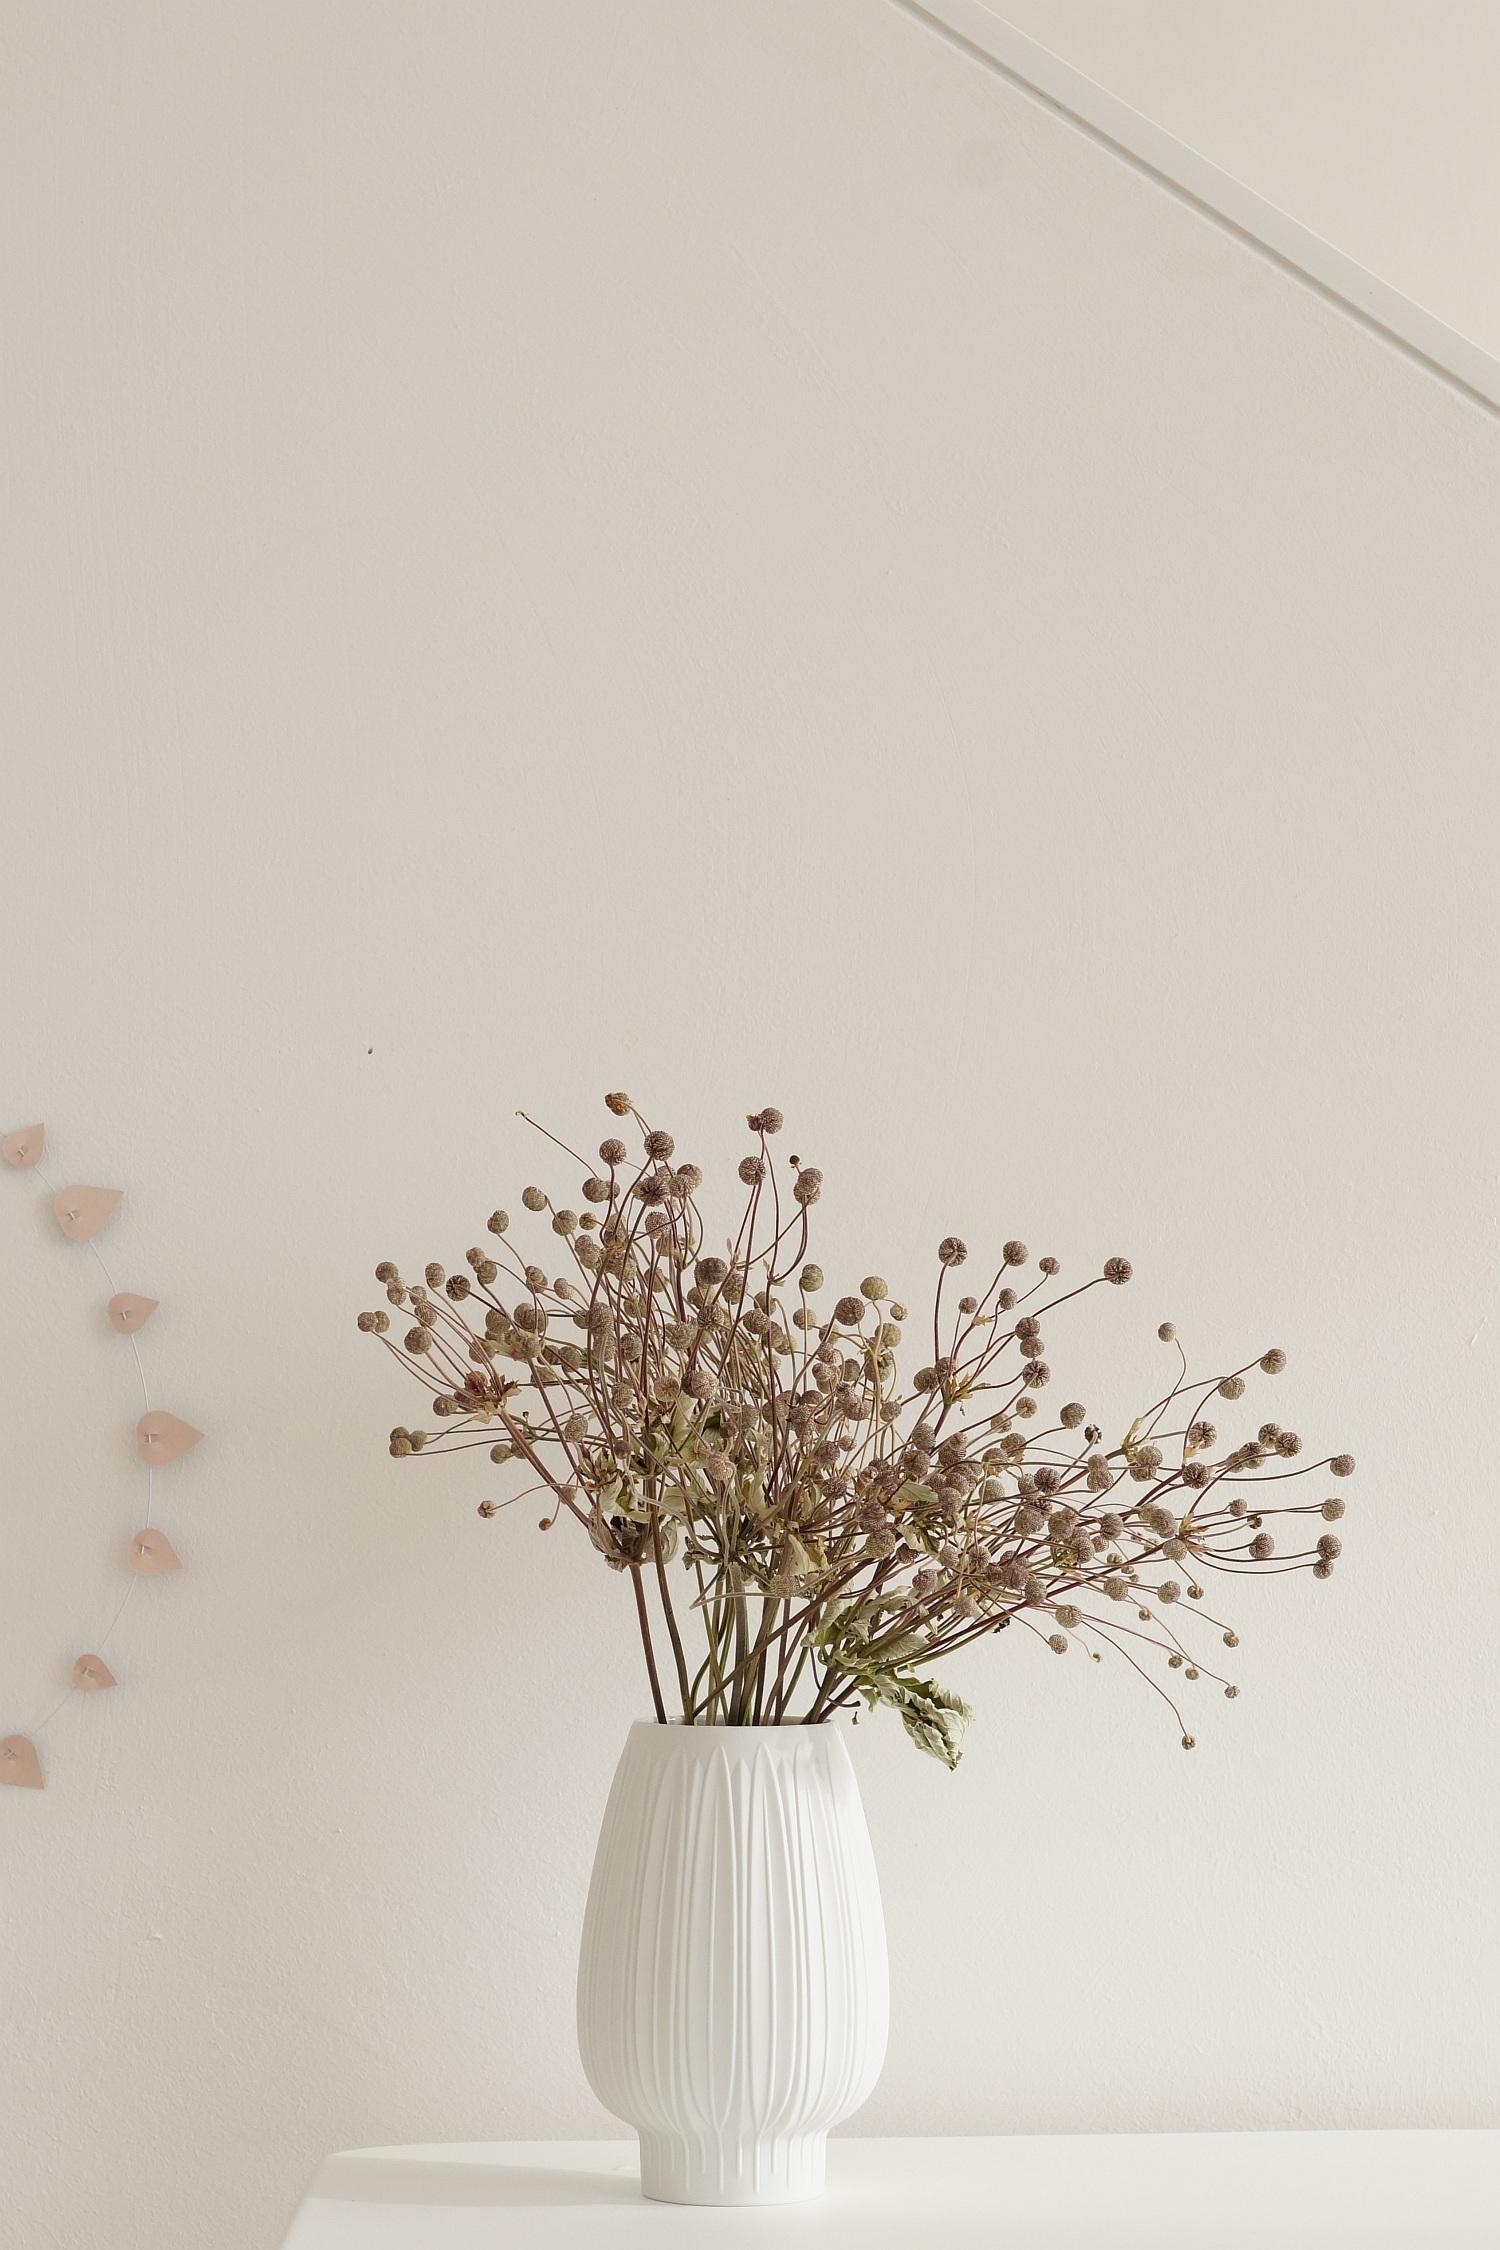 #herbst #blumen #trockenblumen #minimalistisch #pur #vintage #porzellan #weiß #herbstanemonen